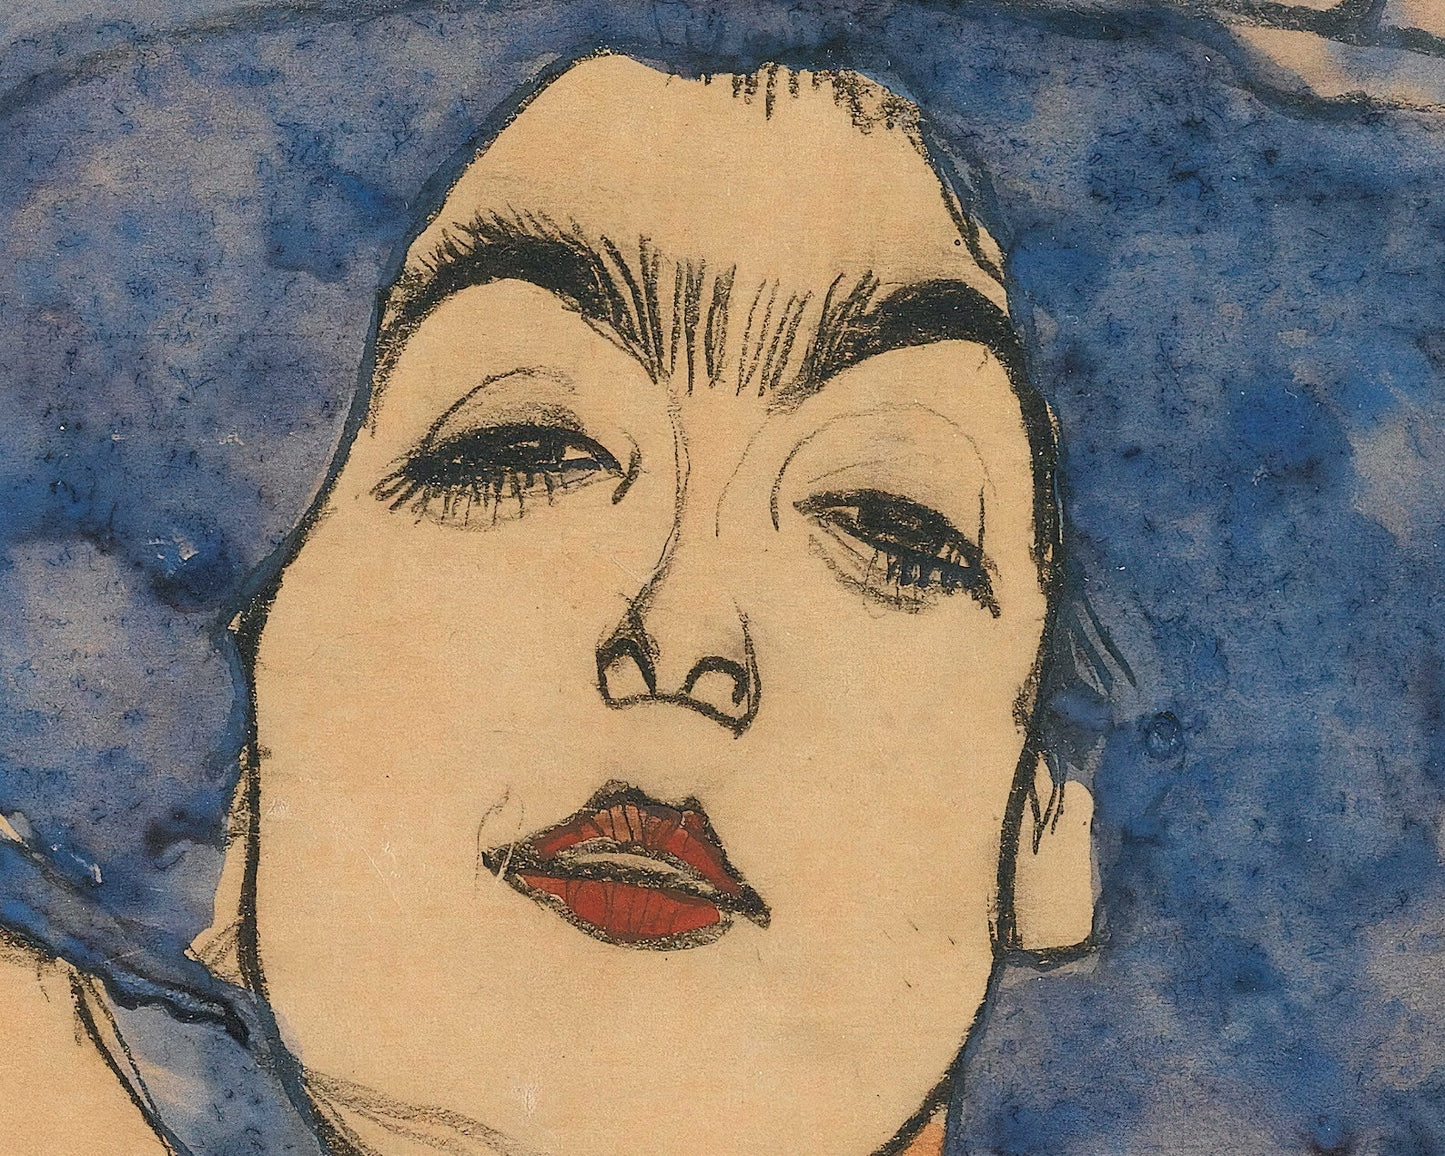 Egon Schiele "Eva Freund in Blue Hat" (c.1910) - Mabon Gallery